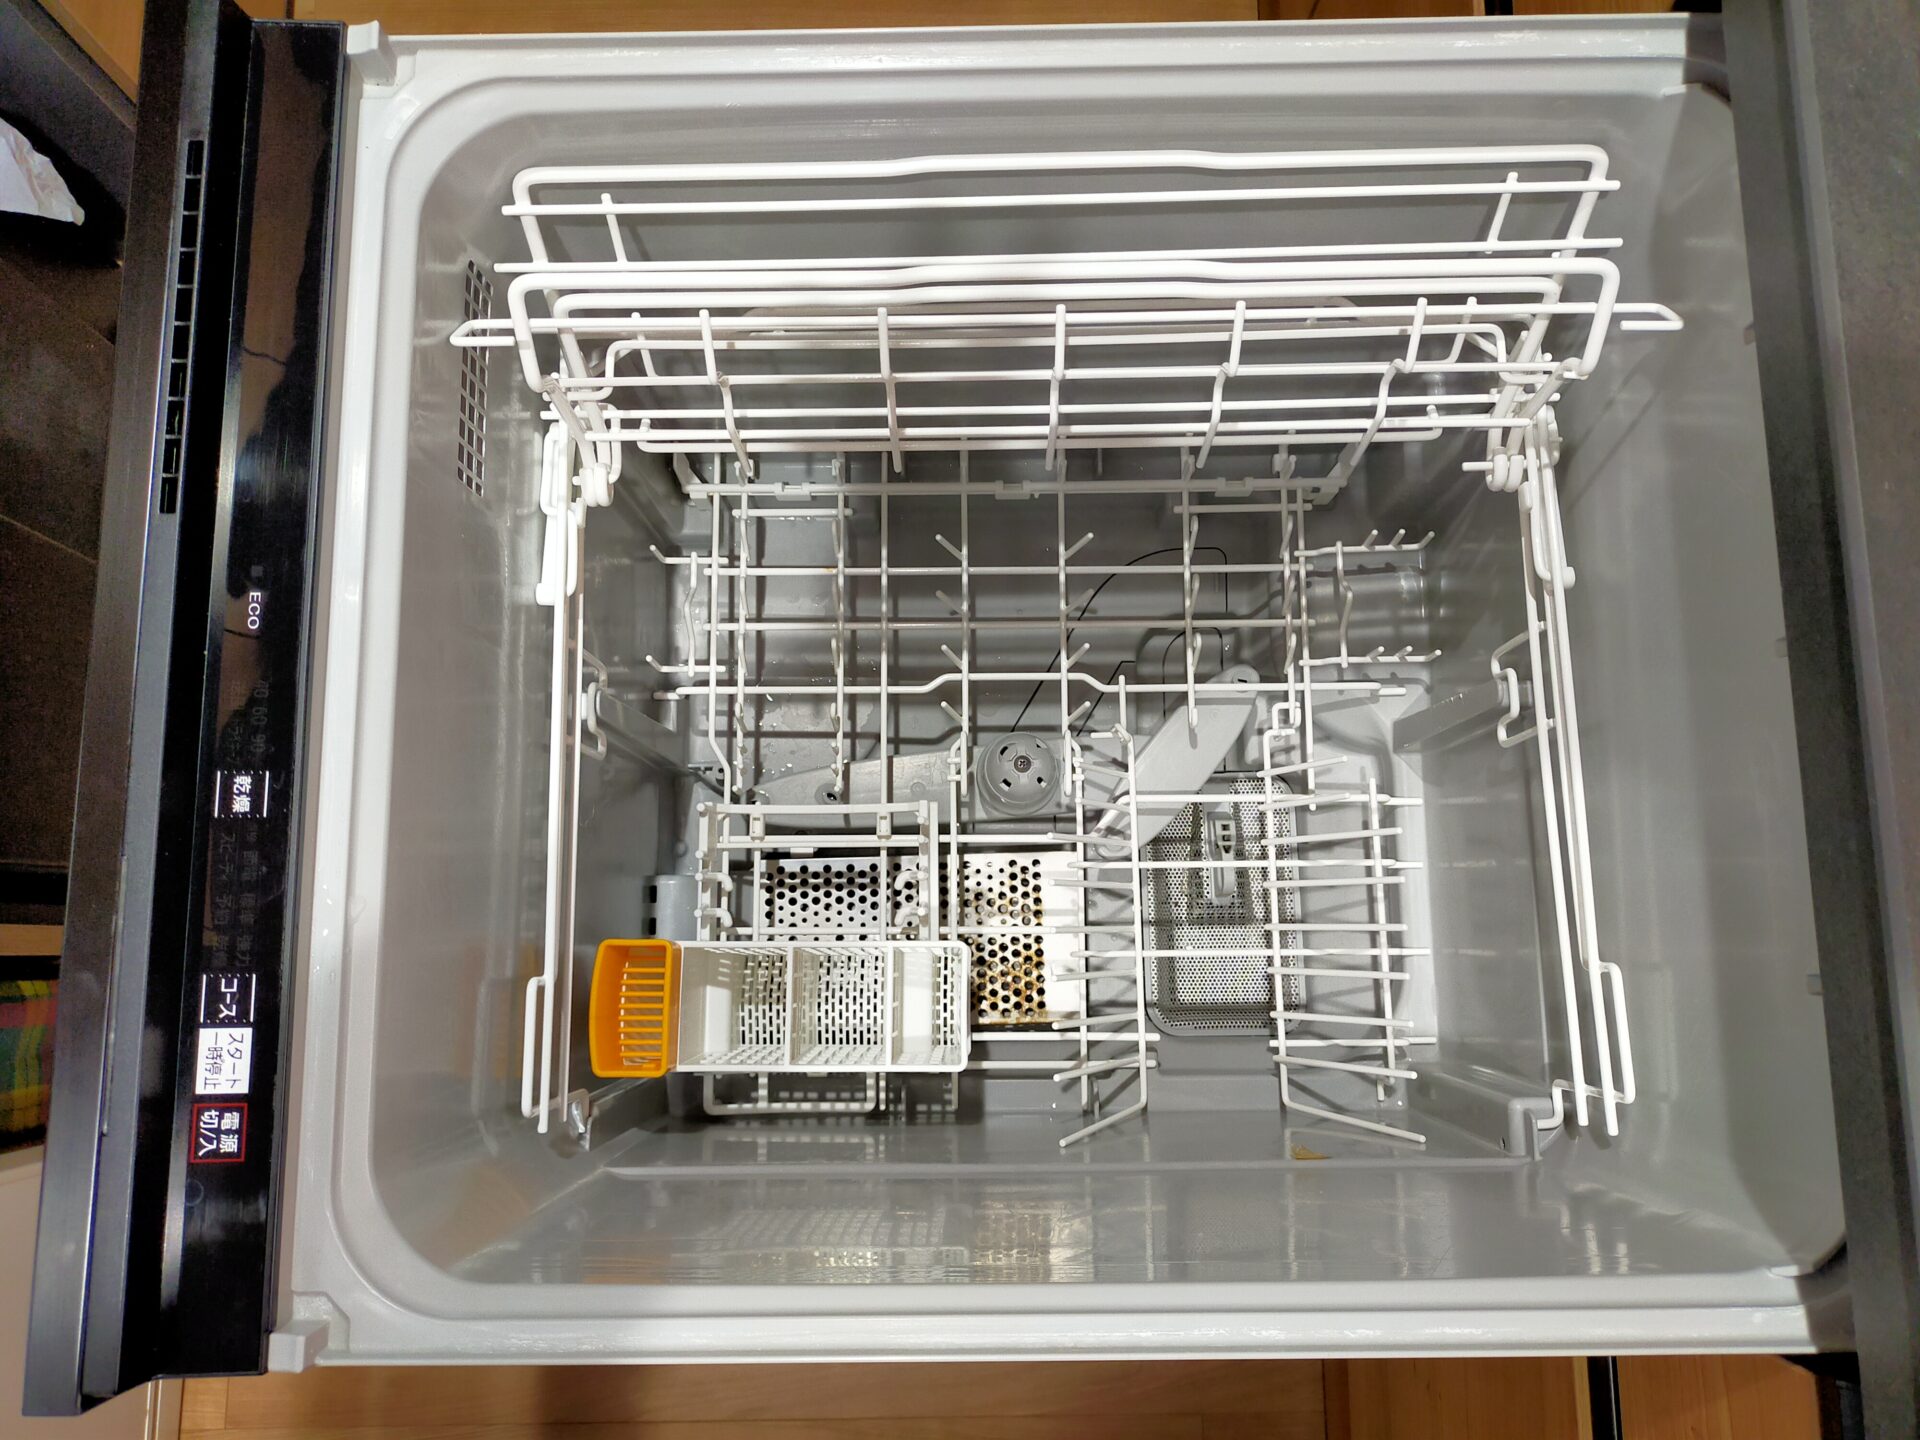 スライドオープン食洗機